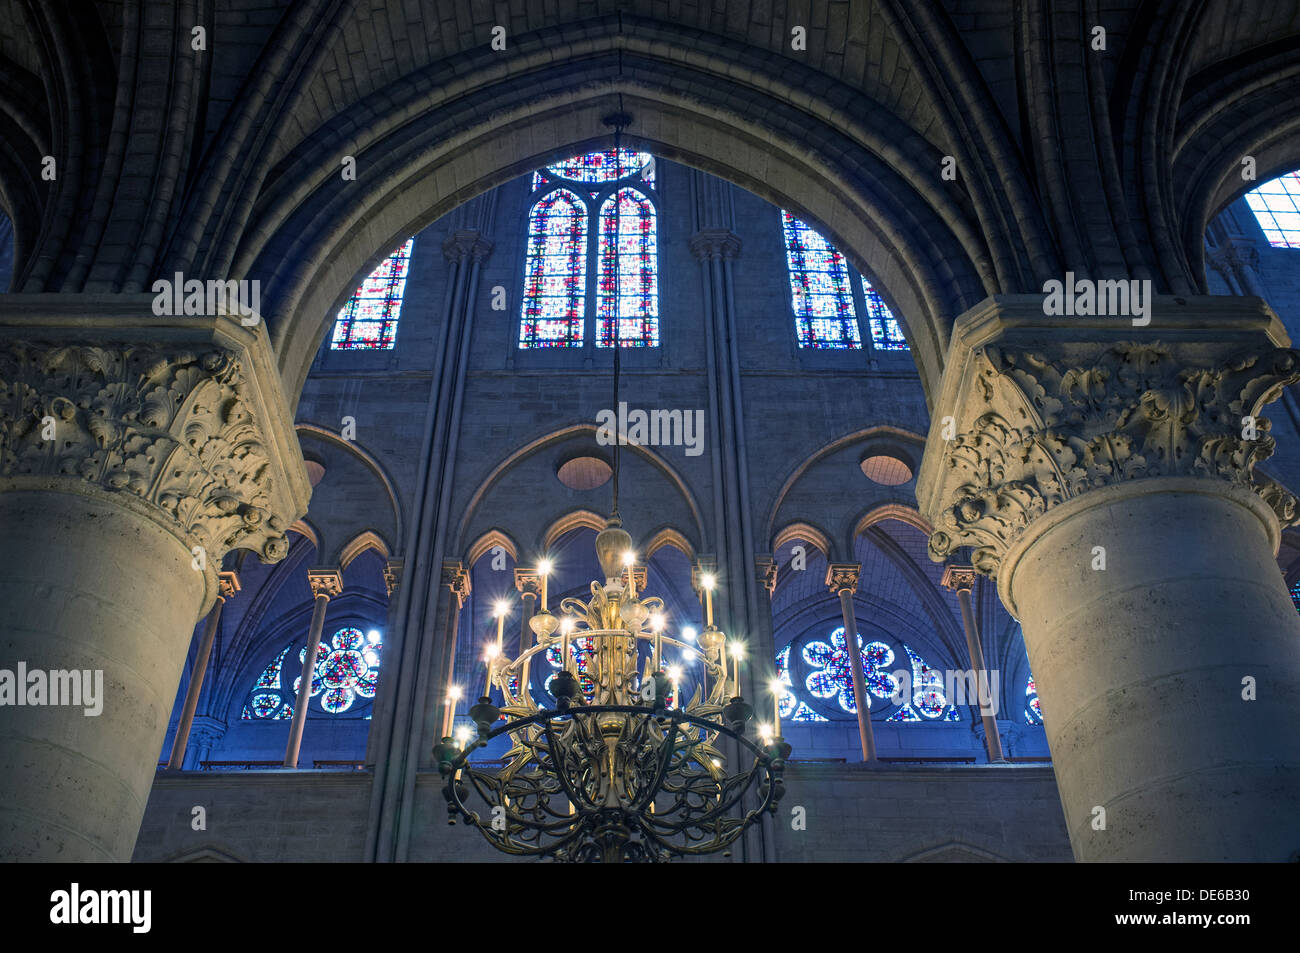 Vue de l'intérieur de la Cathédrale Notre Dame, Paris, France. Banque D'Images